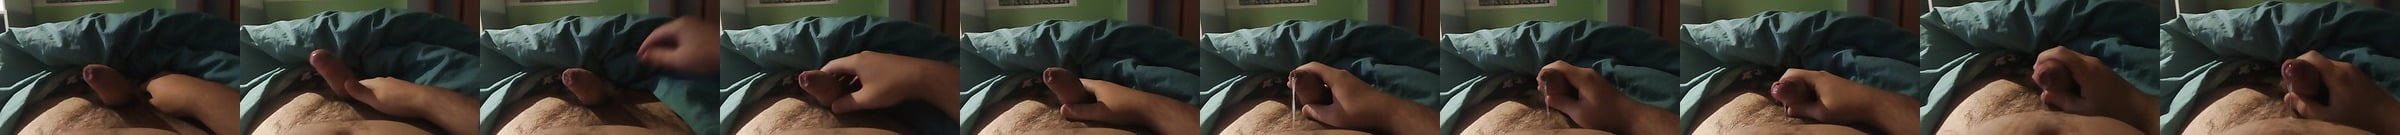 Uncut Handjob Cum In Foreskin Lots Of Precum Gay Porn D9 Xhamster